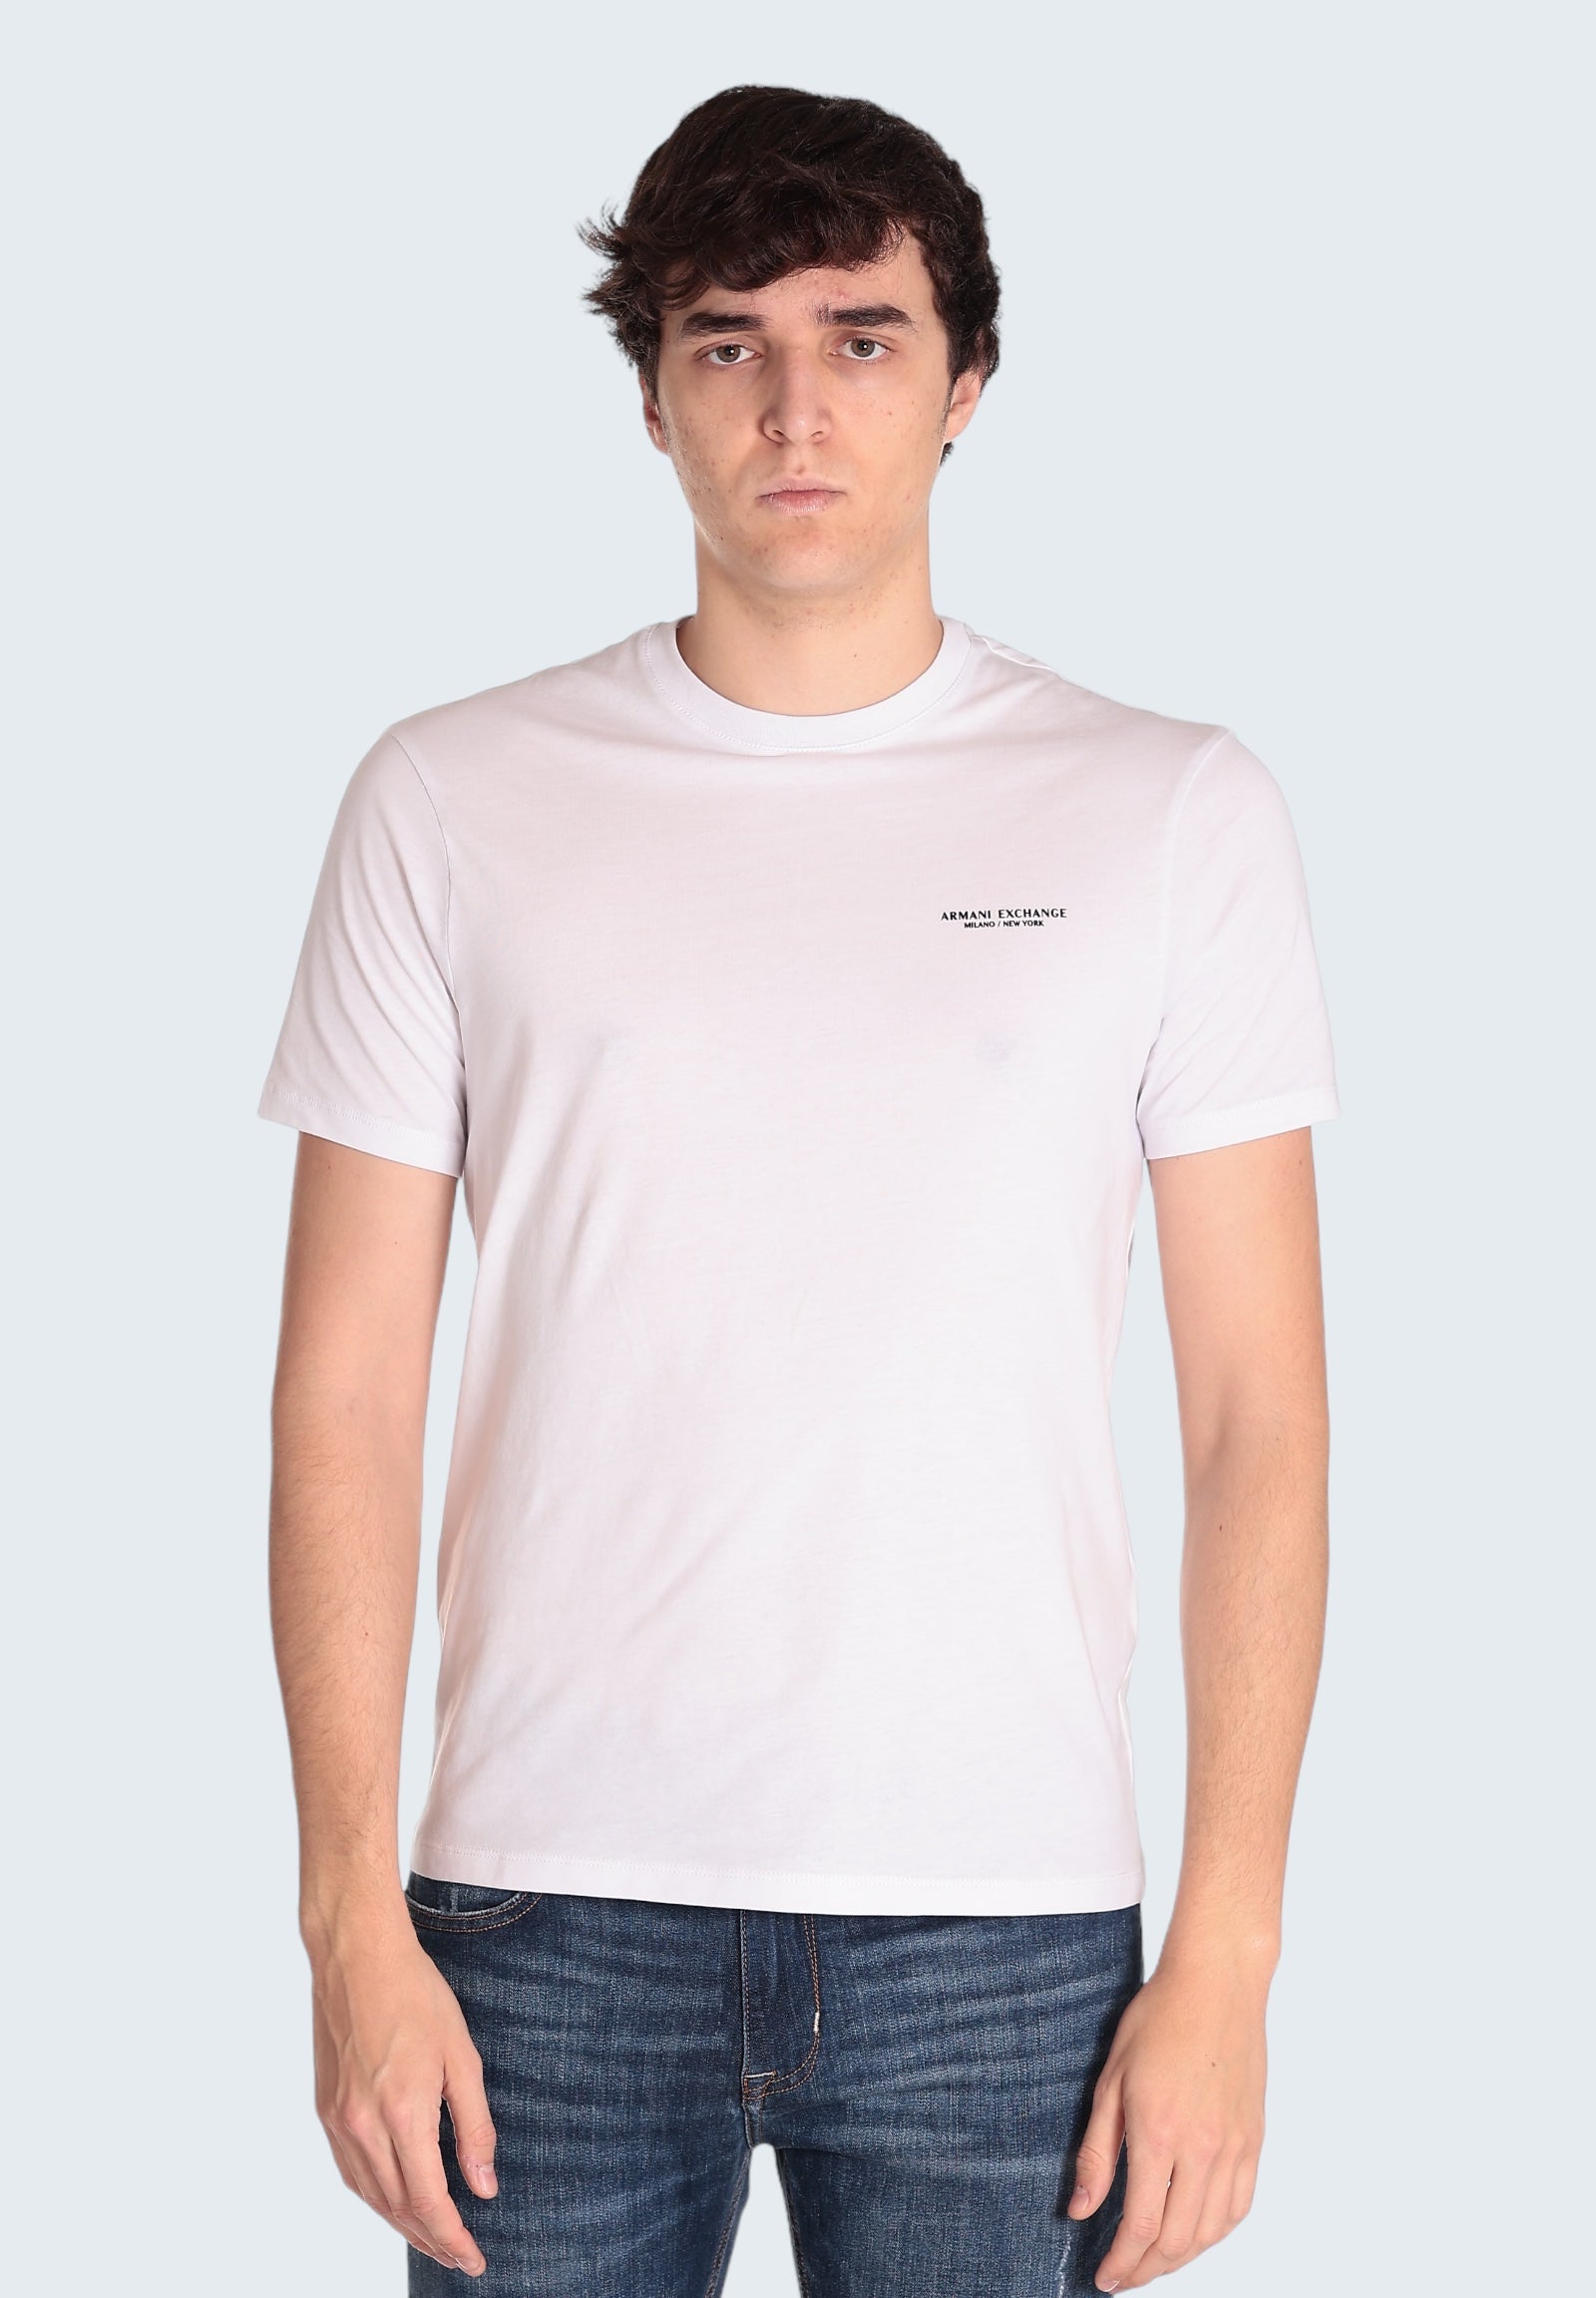 T-Shirt 8nzt91 White